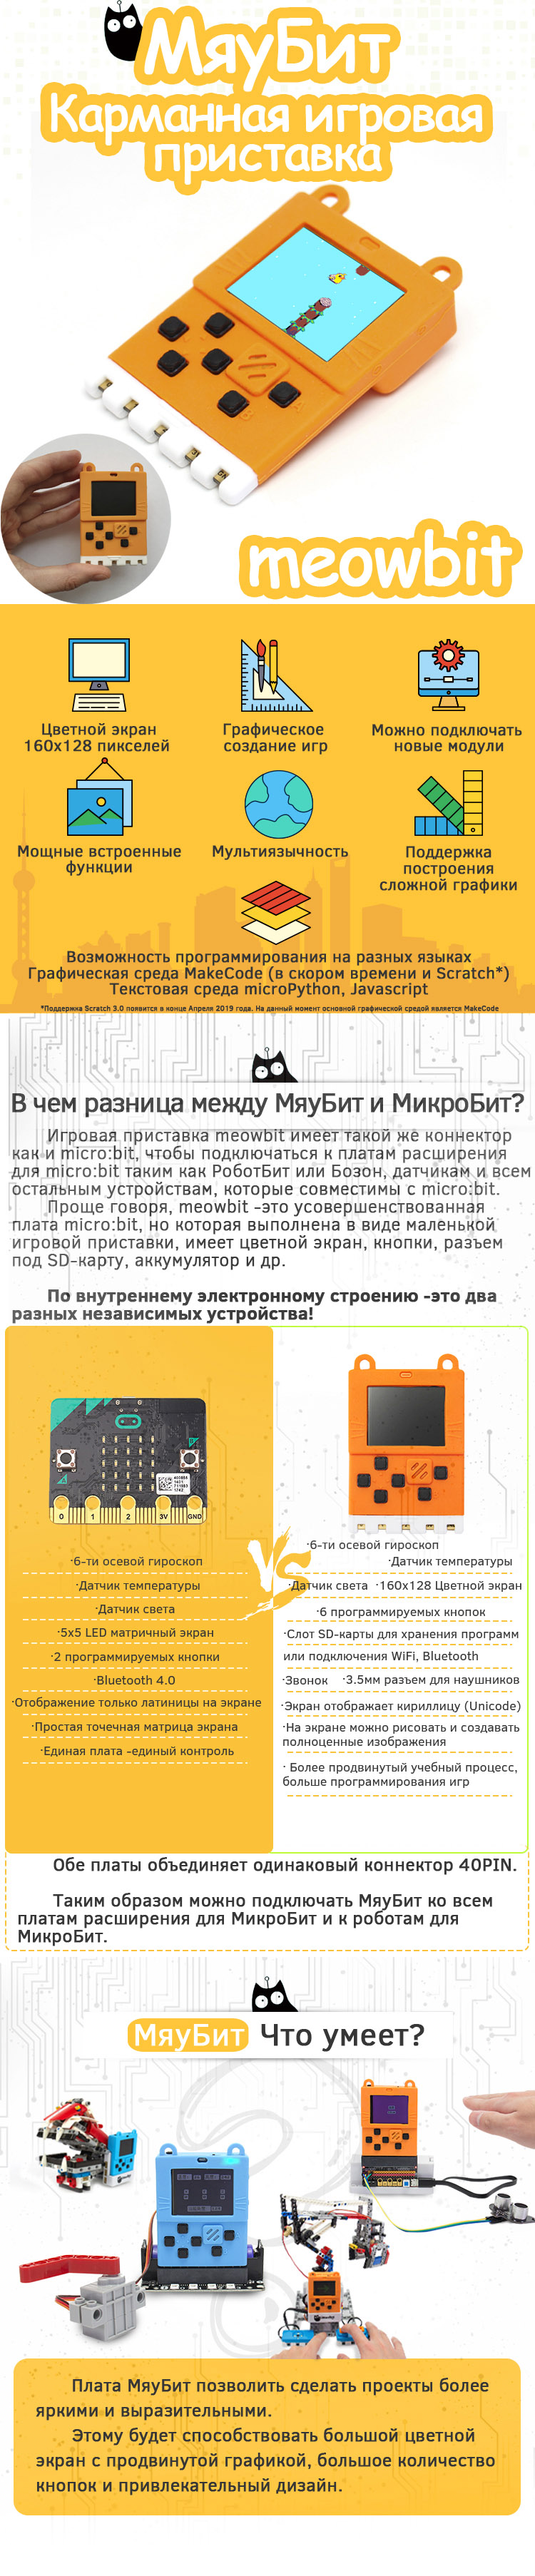 meowbit-description-rus-part1-2